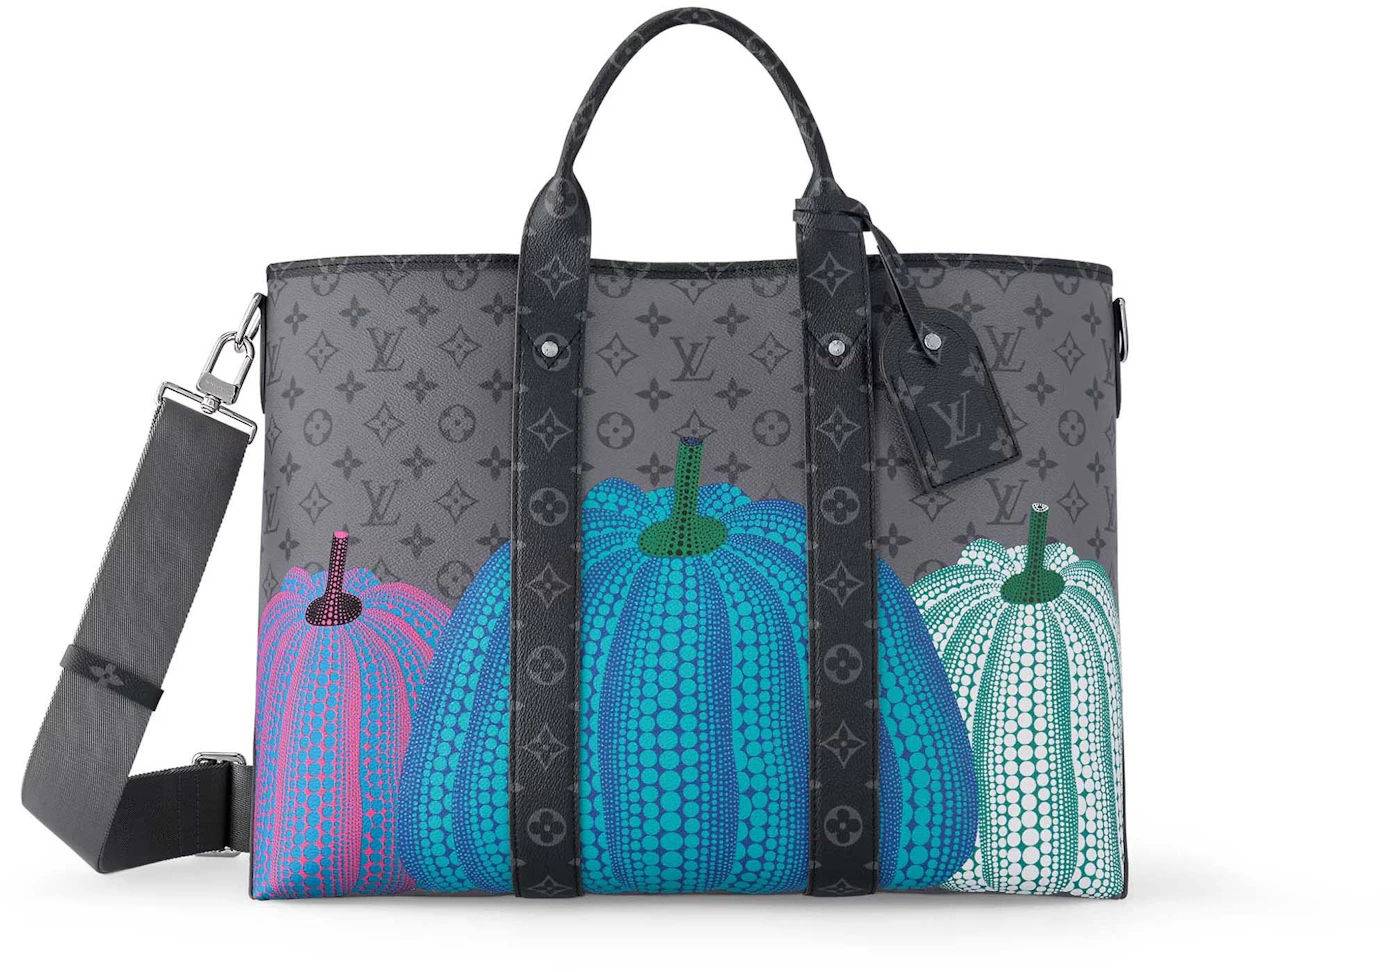 LV x YK Square Bag Monogram Canvas - Handbags